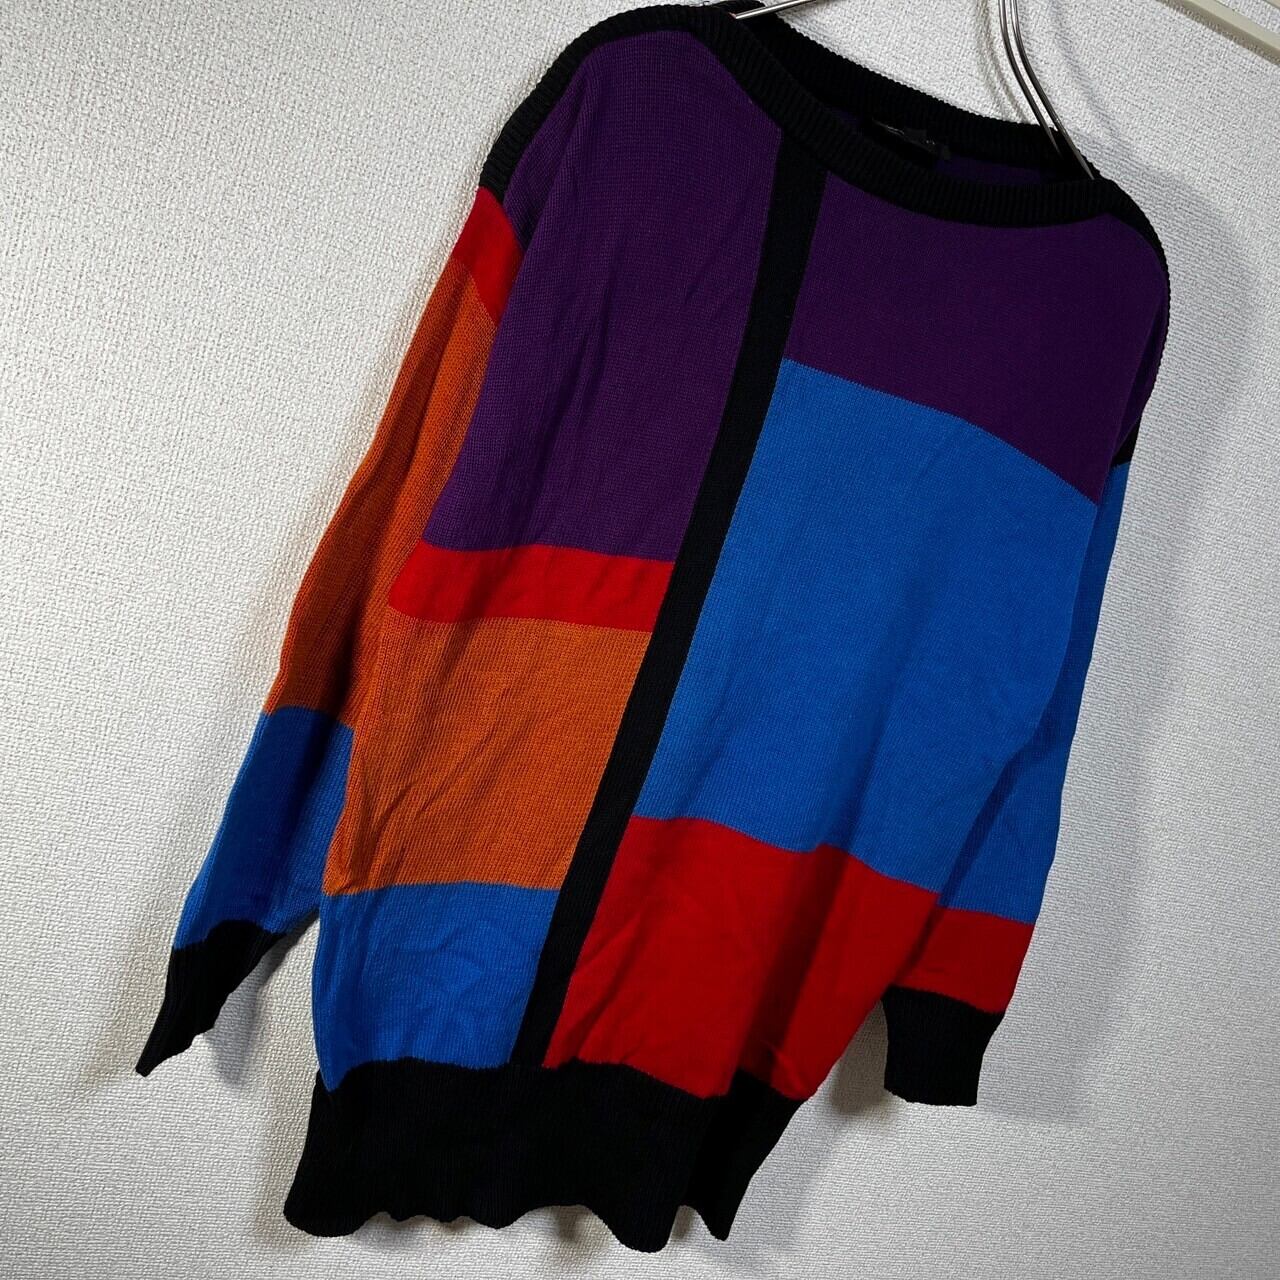 USA製 セーター ニット クレイジーパターン ド派手 紫 オレンジ黒15